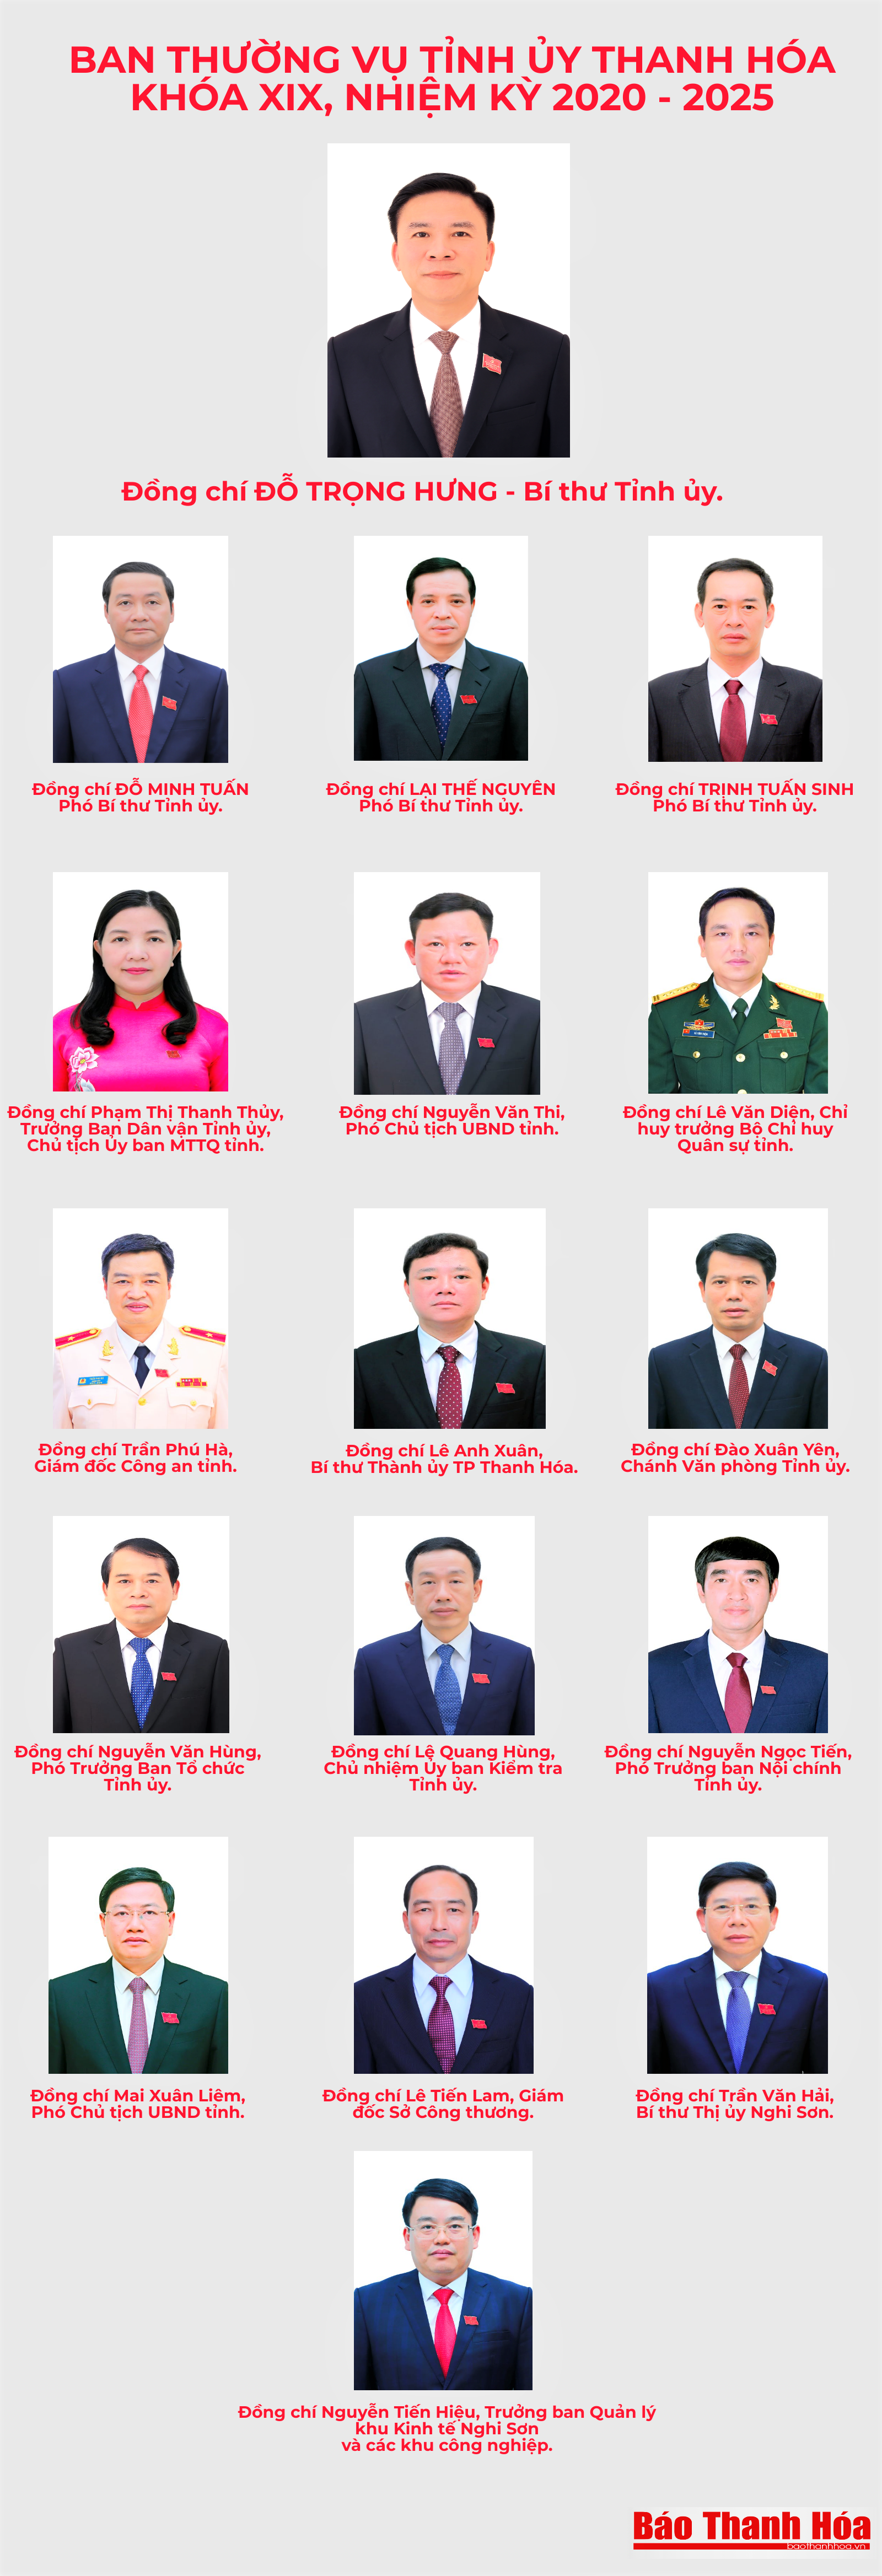 Danh sách Ban Thường vụ Tỉnh ủy Thanh Hóa khóa XIX, nhiệm kỳ 2020 - 2025